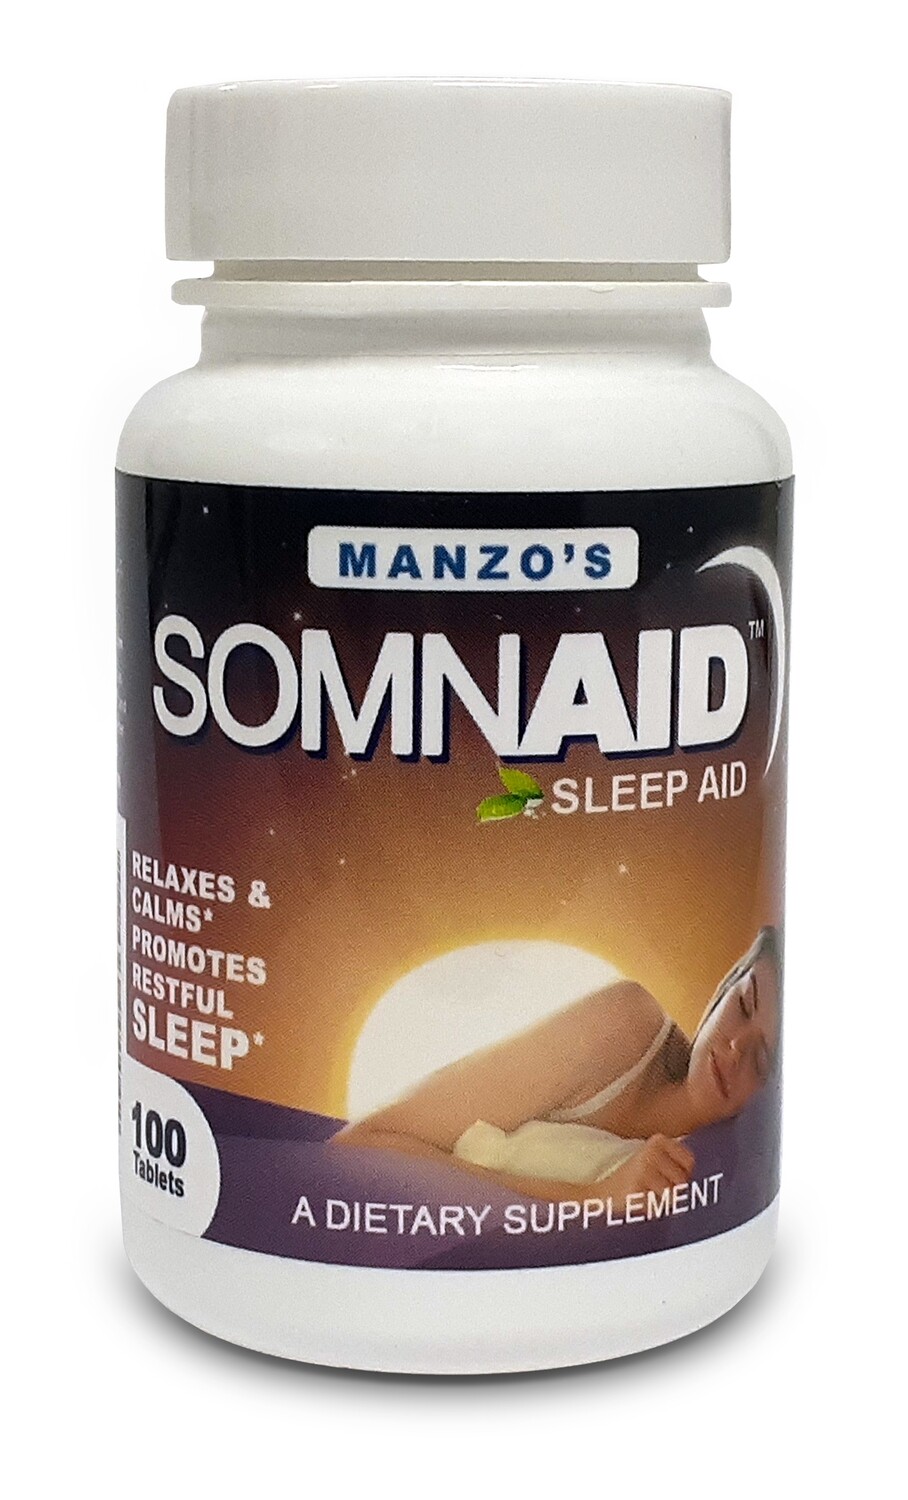 Somnaid Sleep Aid - NEW - 100 Tablets